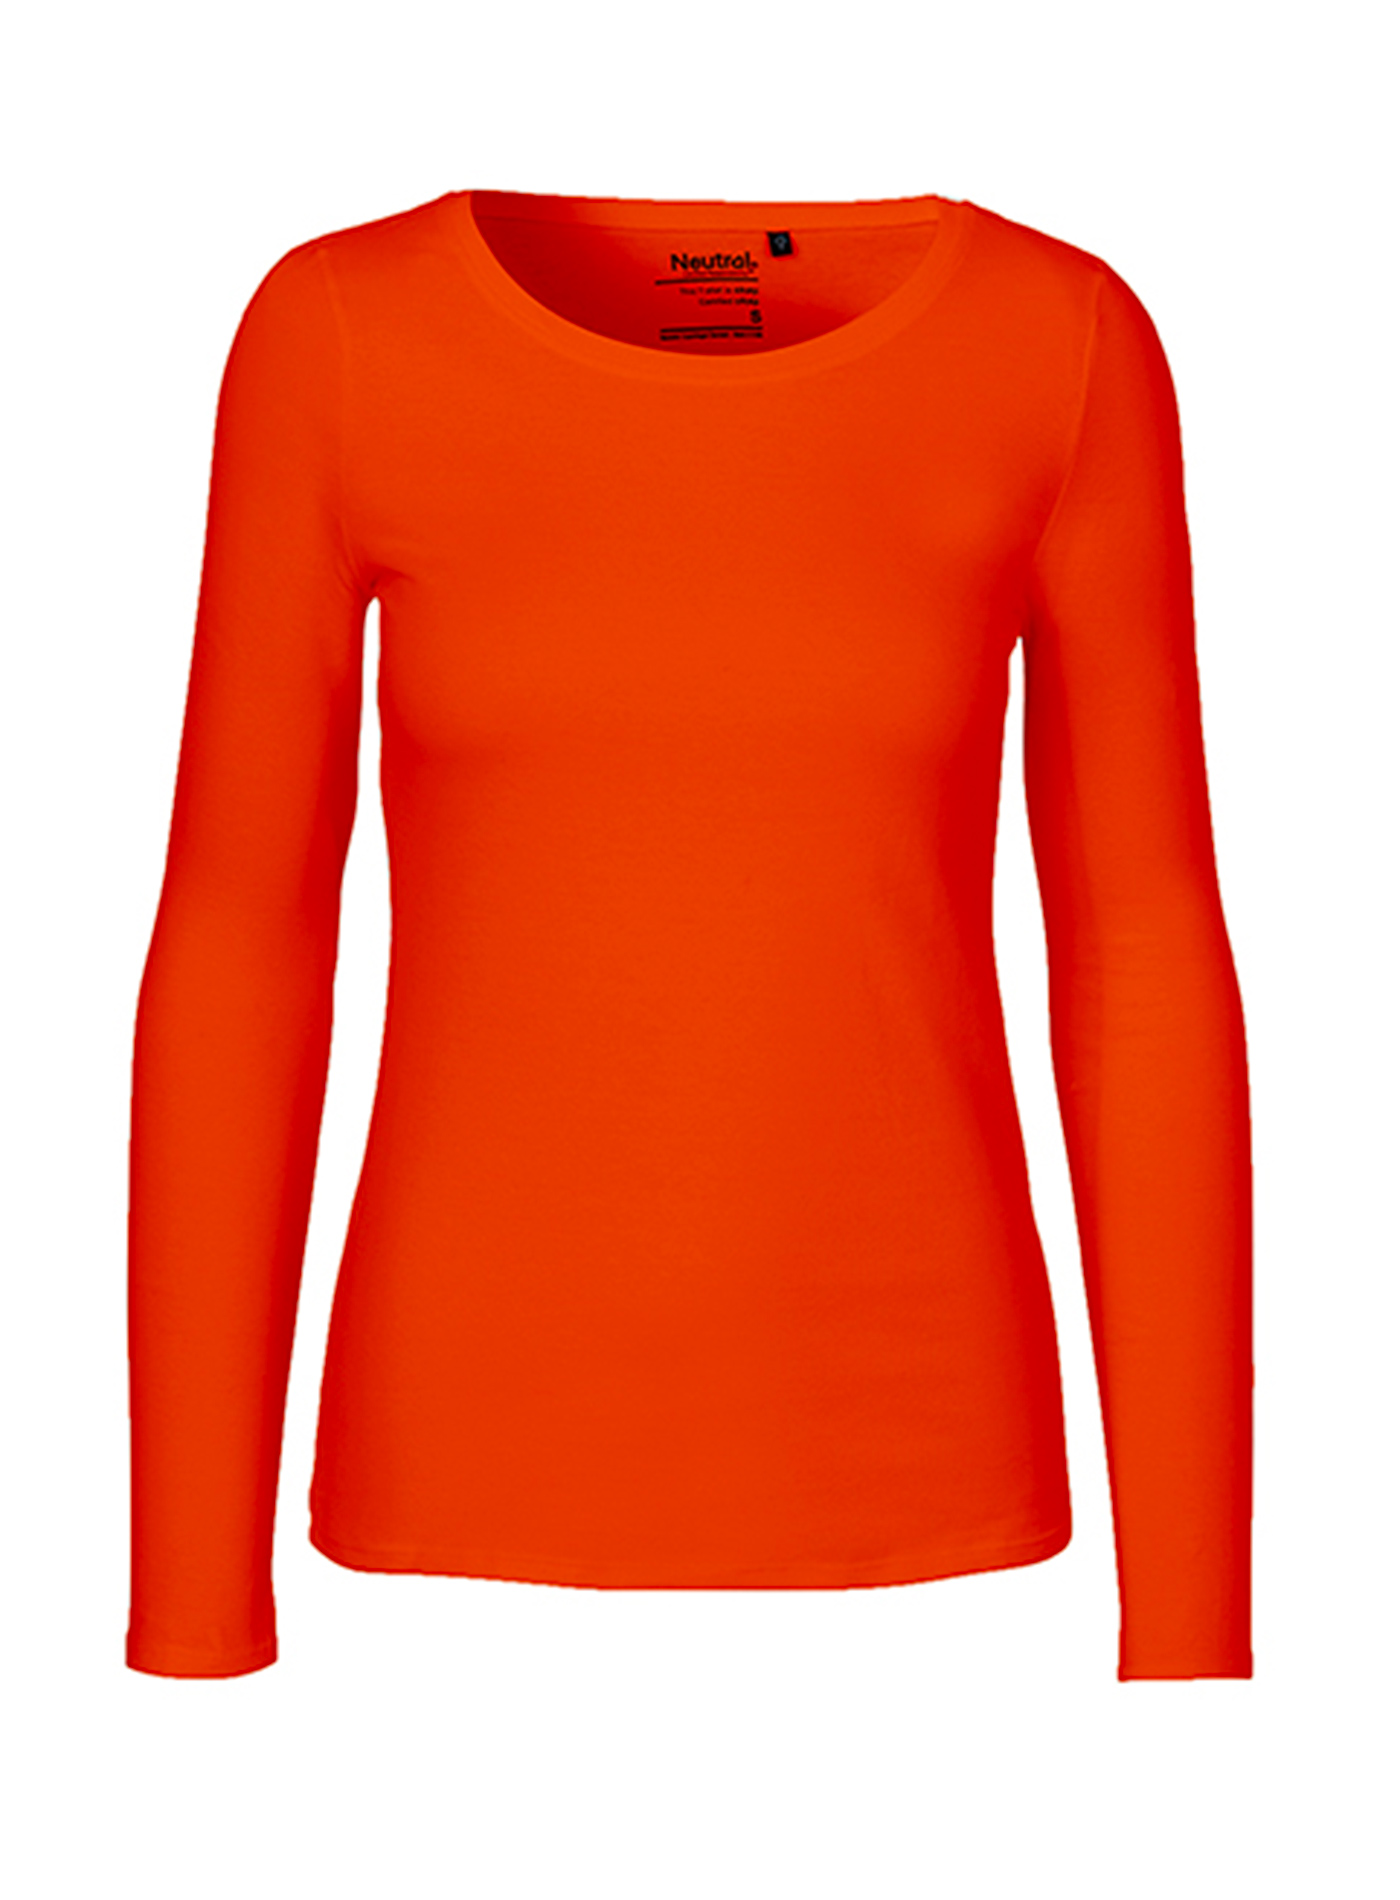 Dámské tričko s dlouhým rukávem Neutral - Oranžová M